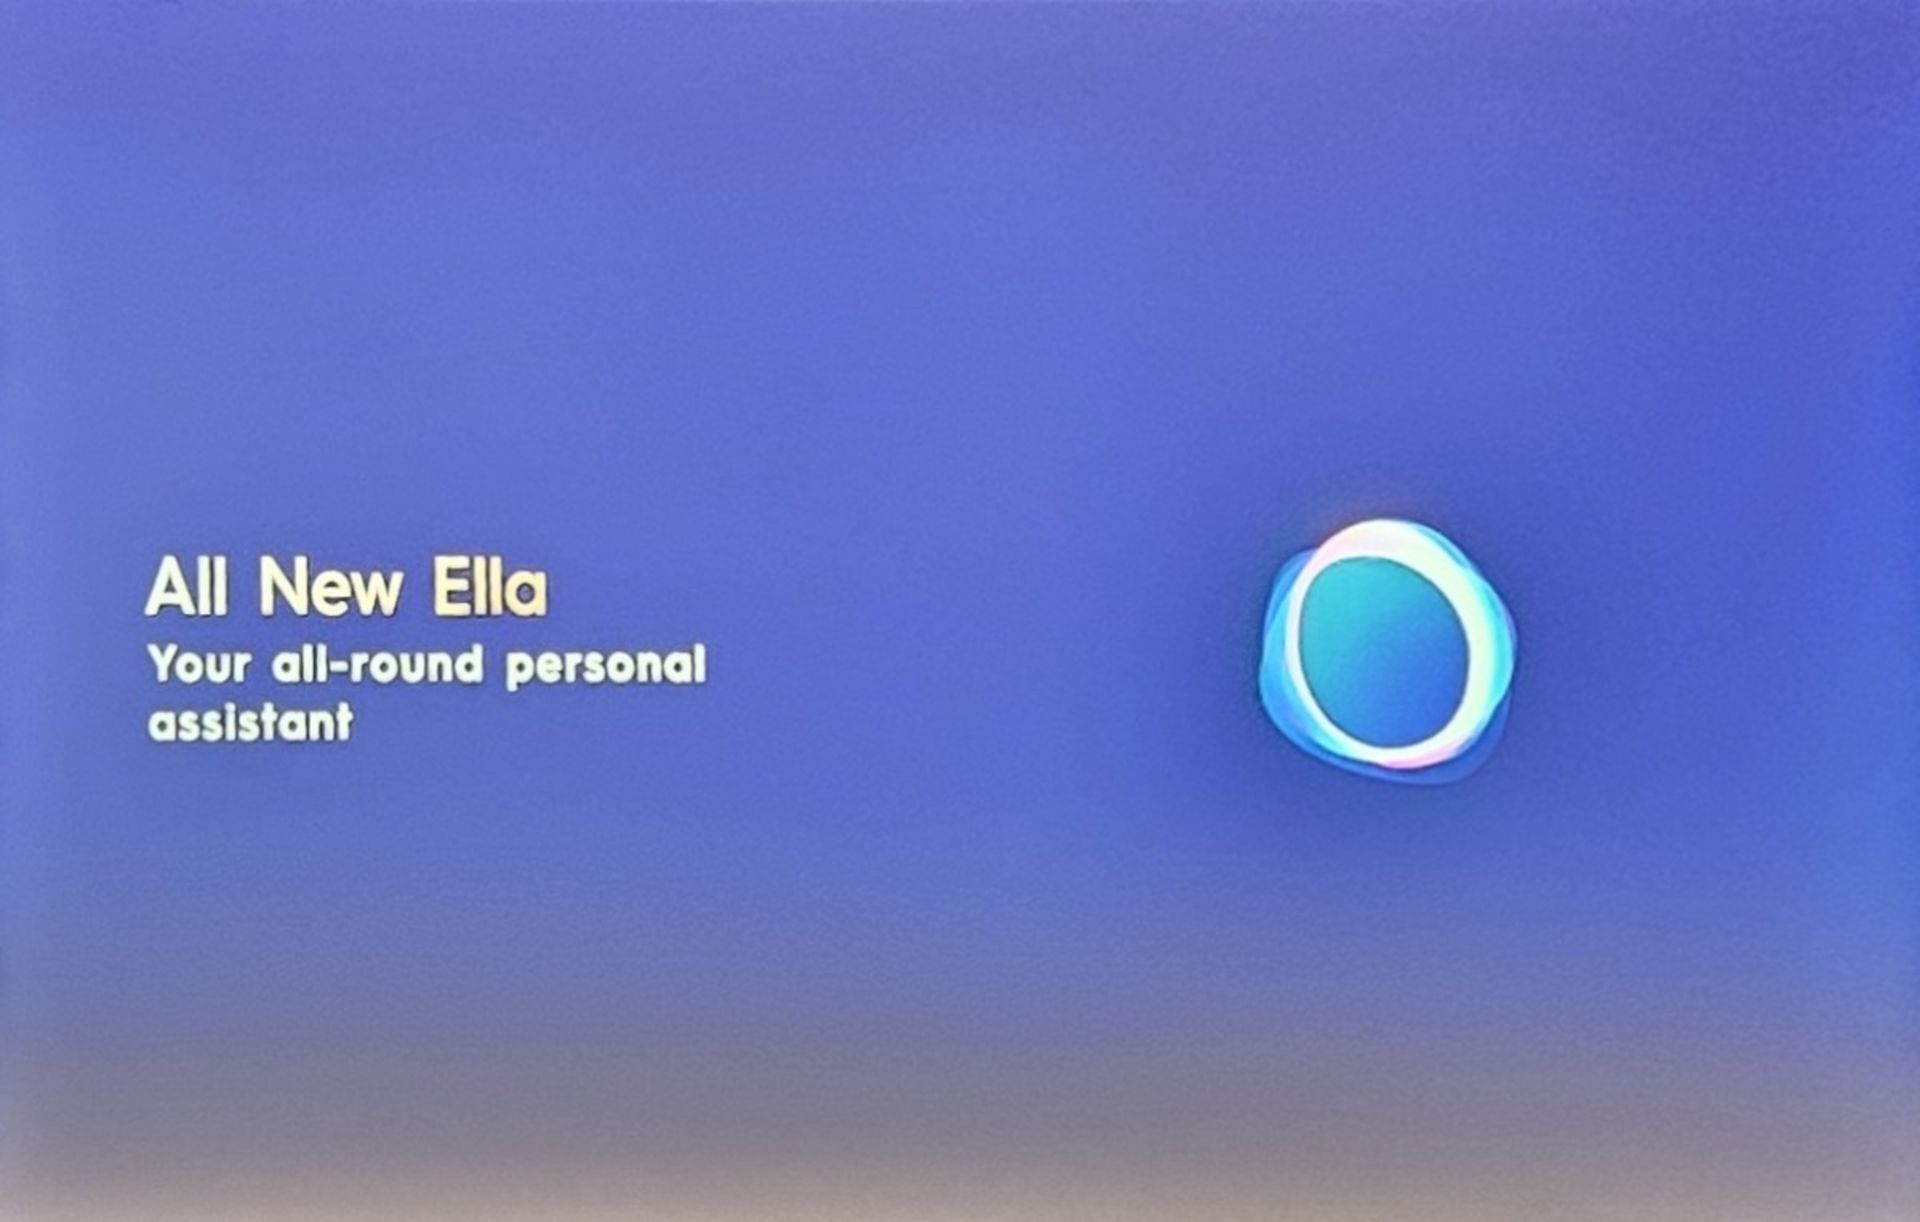 دستیار صوتی و هوش مصنوعی گوشی تکنو نمایش لوگو و نام Ella